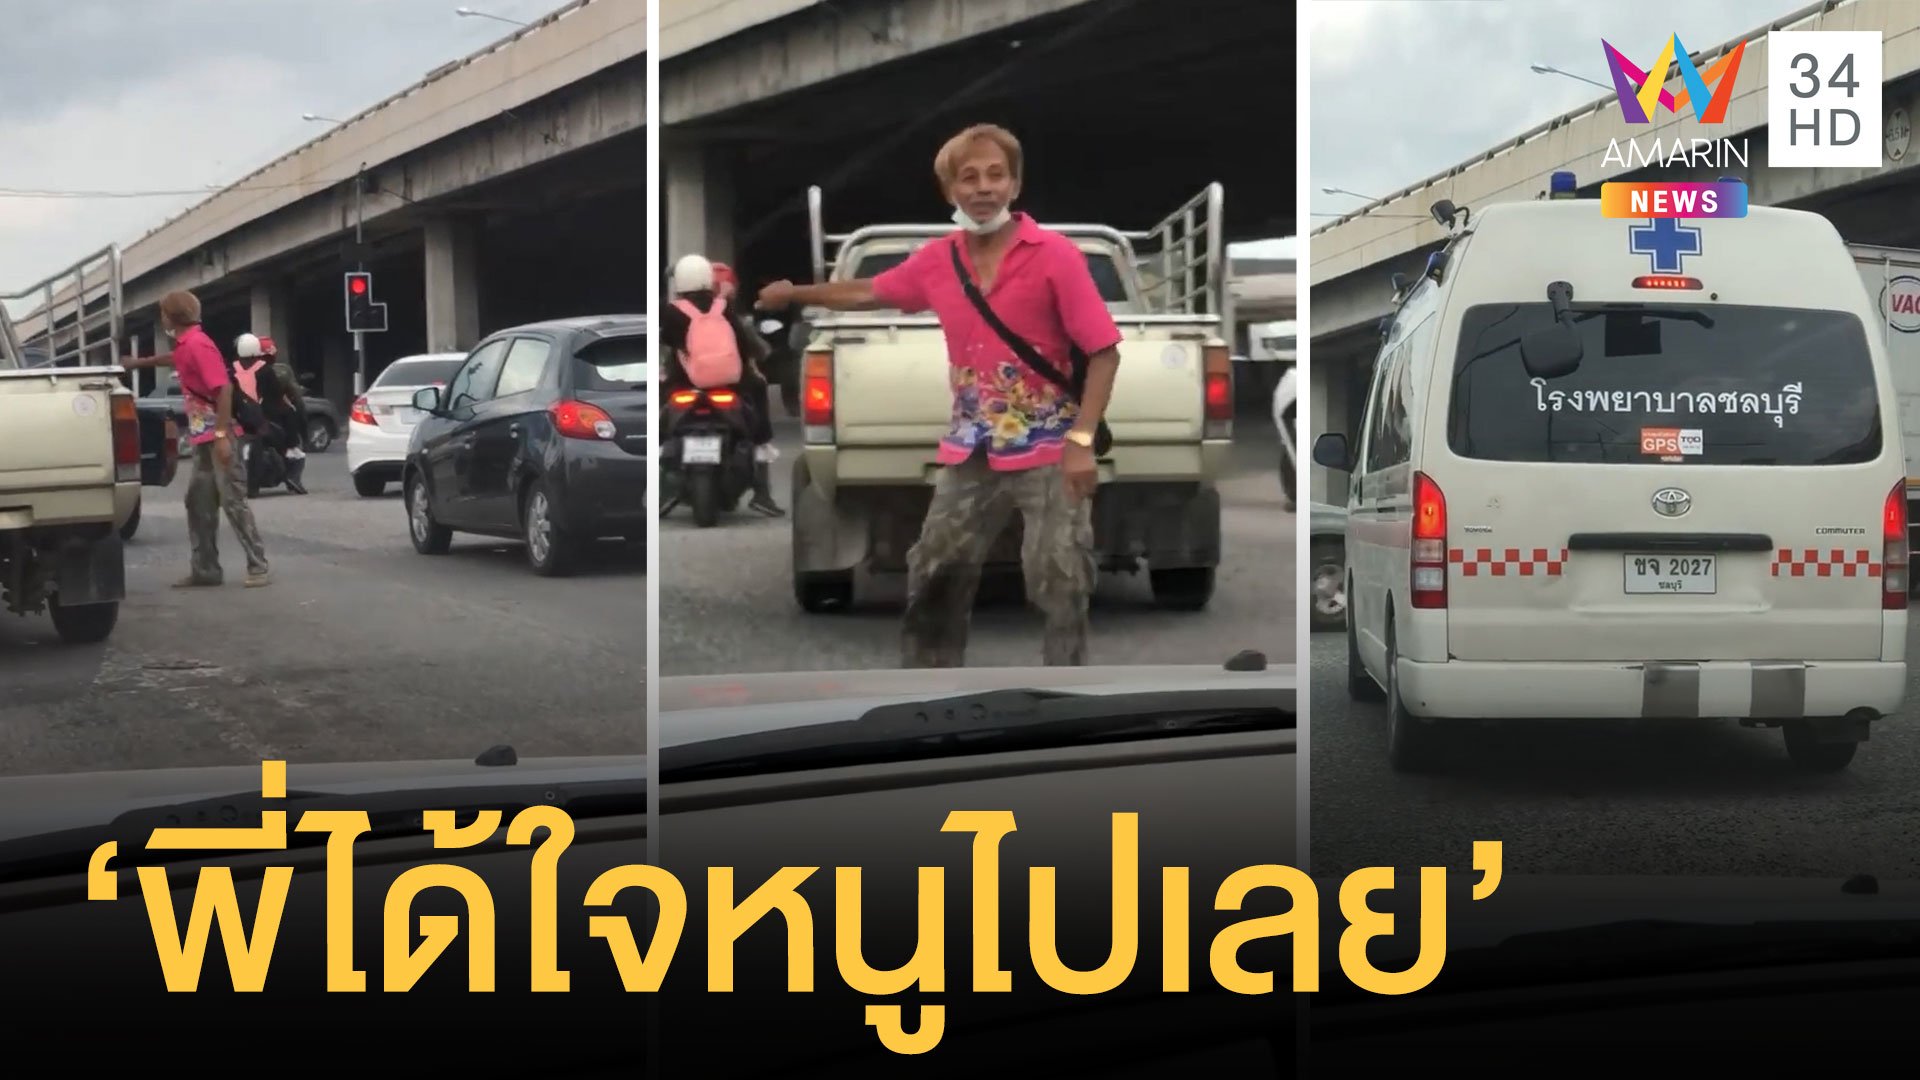 ชาวเน็ตชื่นชมหนุ่มพลเมืองดีโบกเปิดทางให้รถฉุกเฉิน | ข่าวอรุณอมรินทร์ | 4 เม.ย. 64 | AMARIN TVHD34